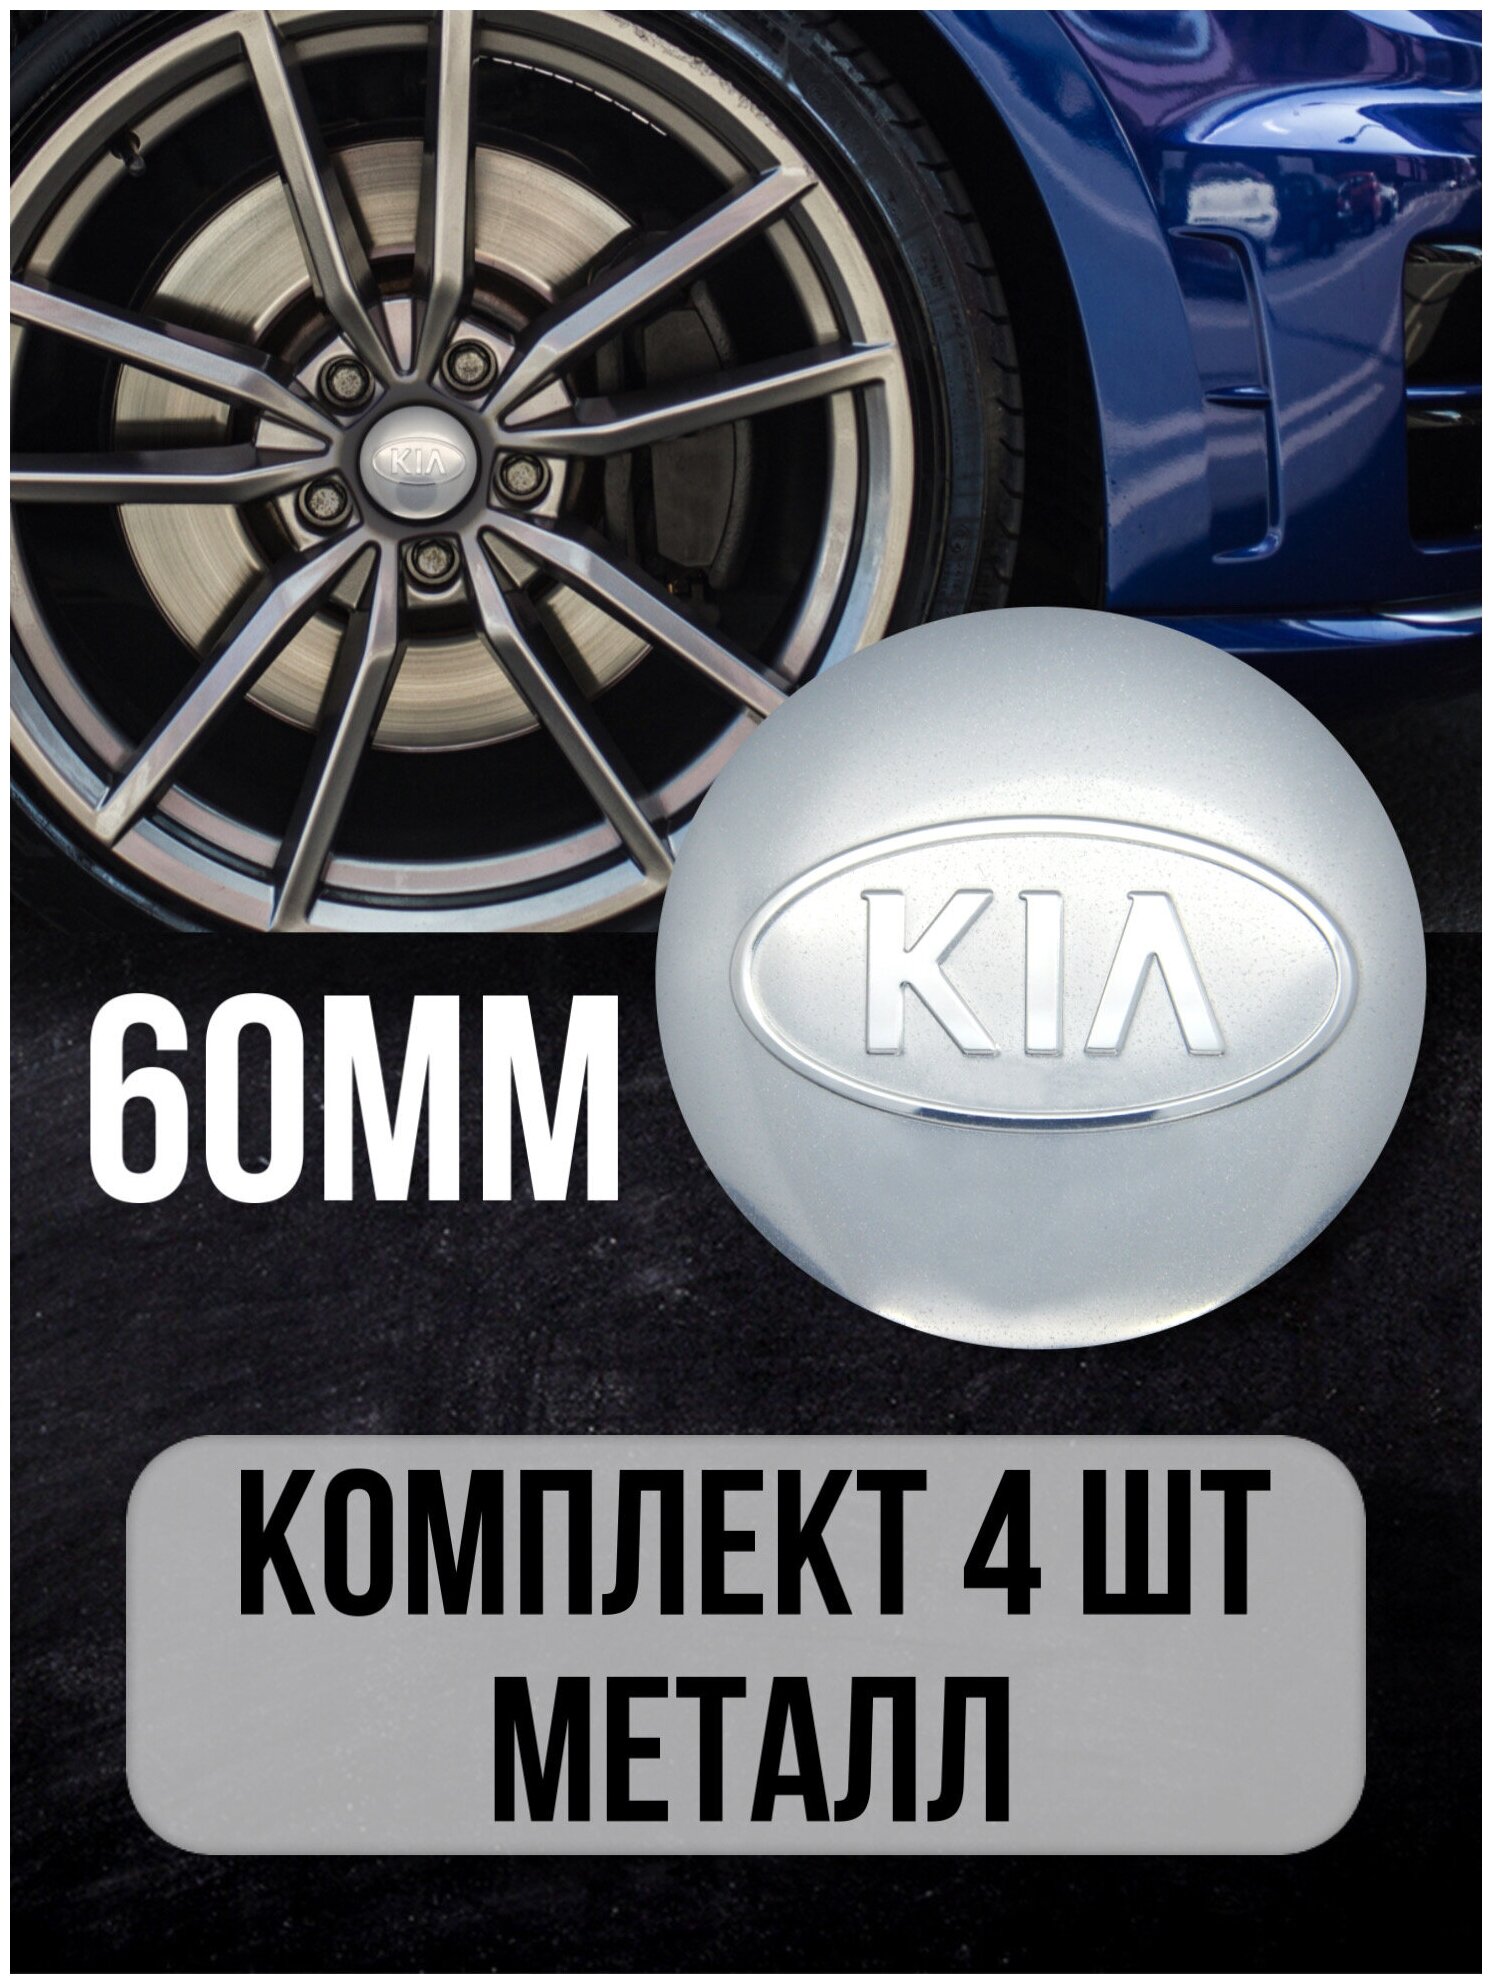 Наклейки на диски автомобильные Mashinokom с логотипом Kia D-60 mm